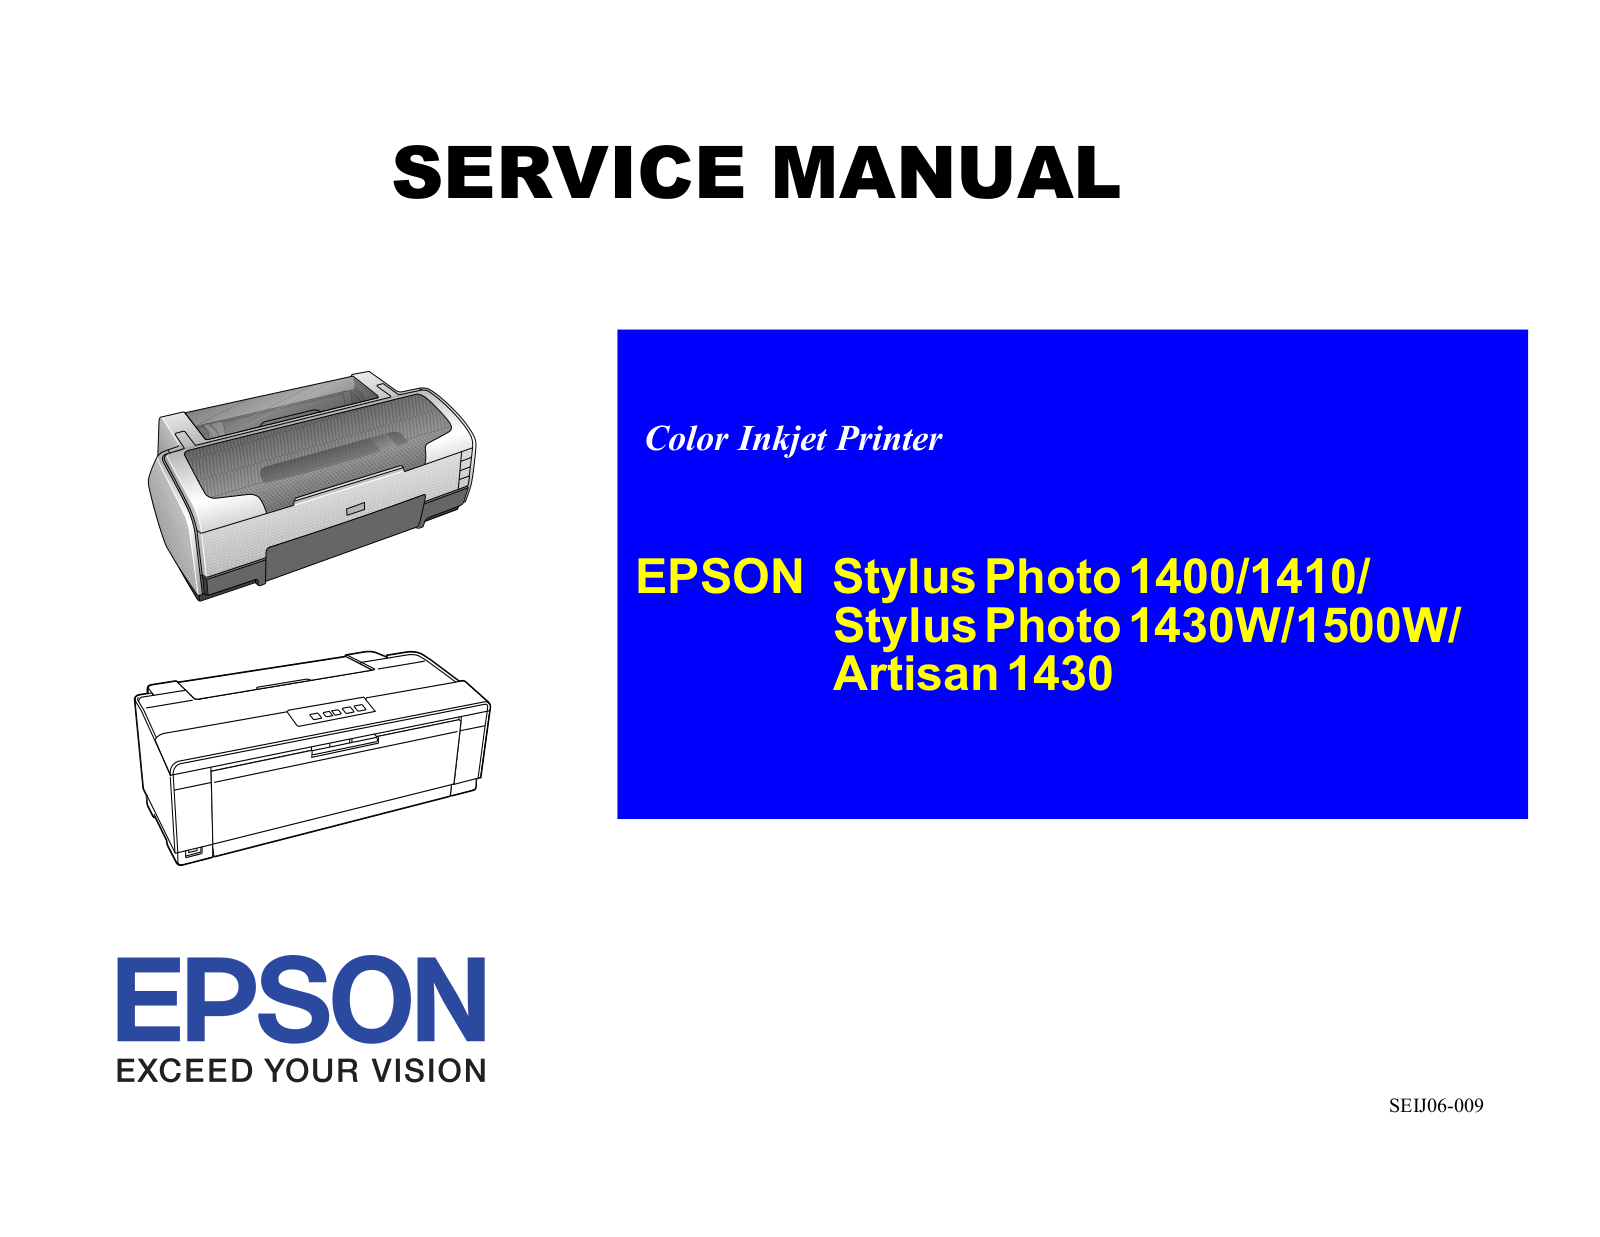 Epson 1400, 1410, 1430w, 1500w, Artisan-1430 Service Manual